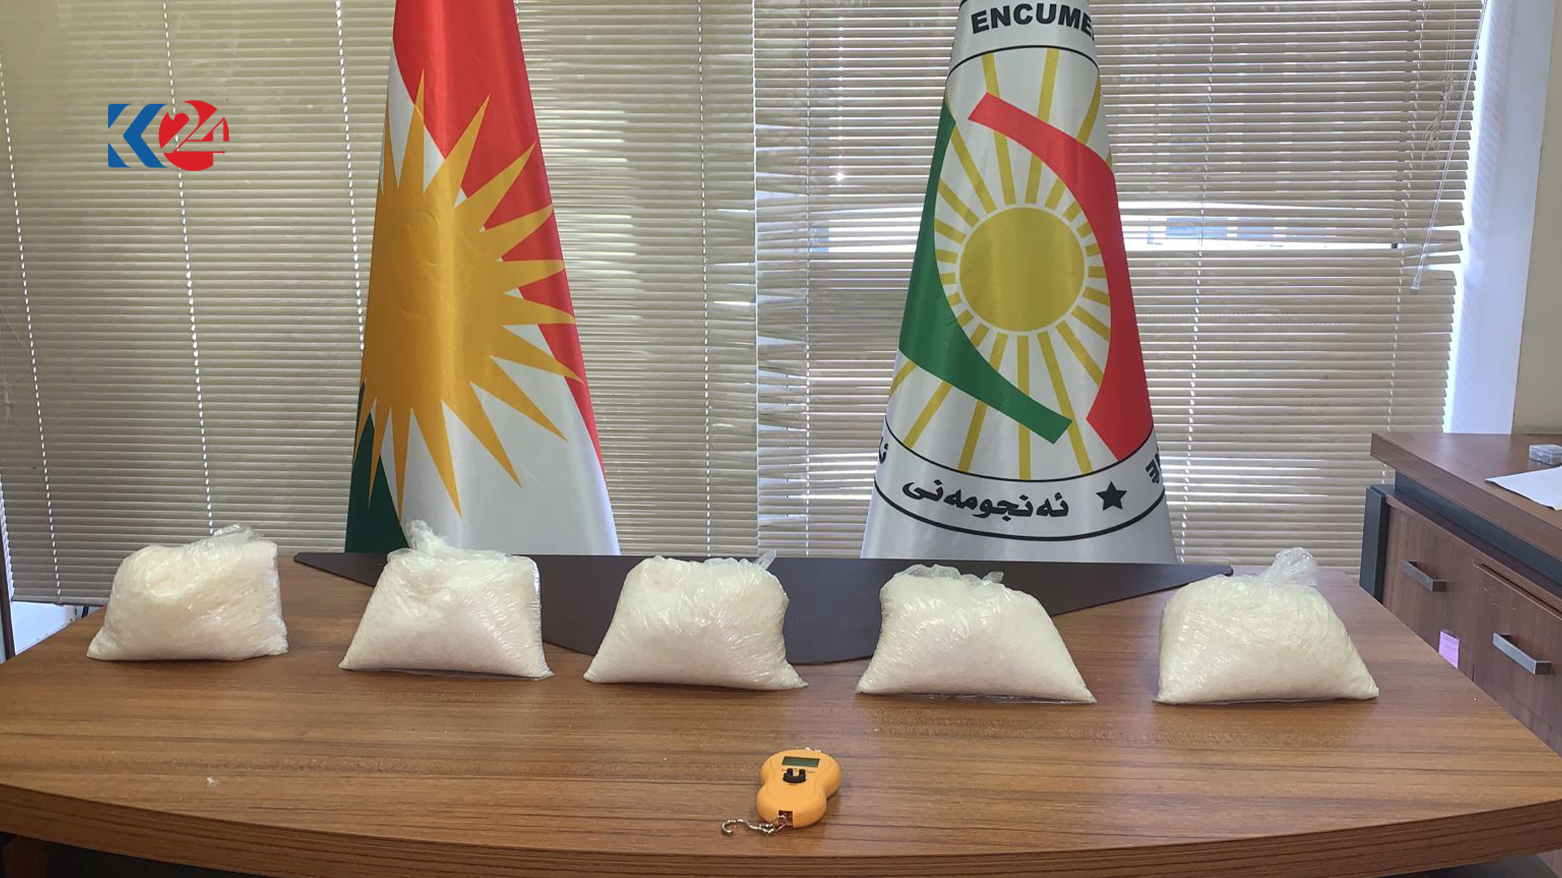 مواد مخدر ضبط شده توسط نیروهای سازمان آسایش اقلیم کوردستان